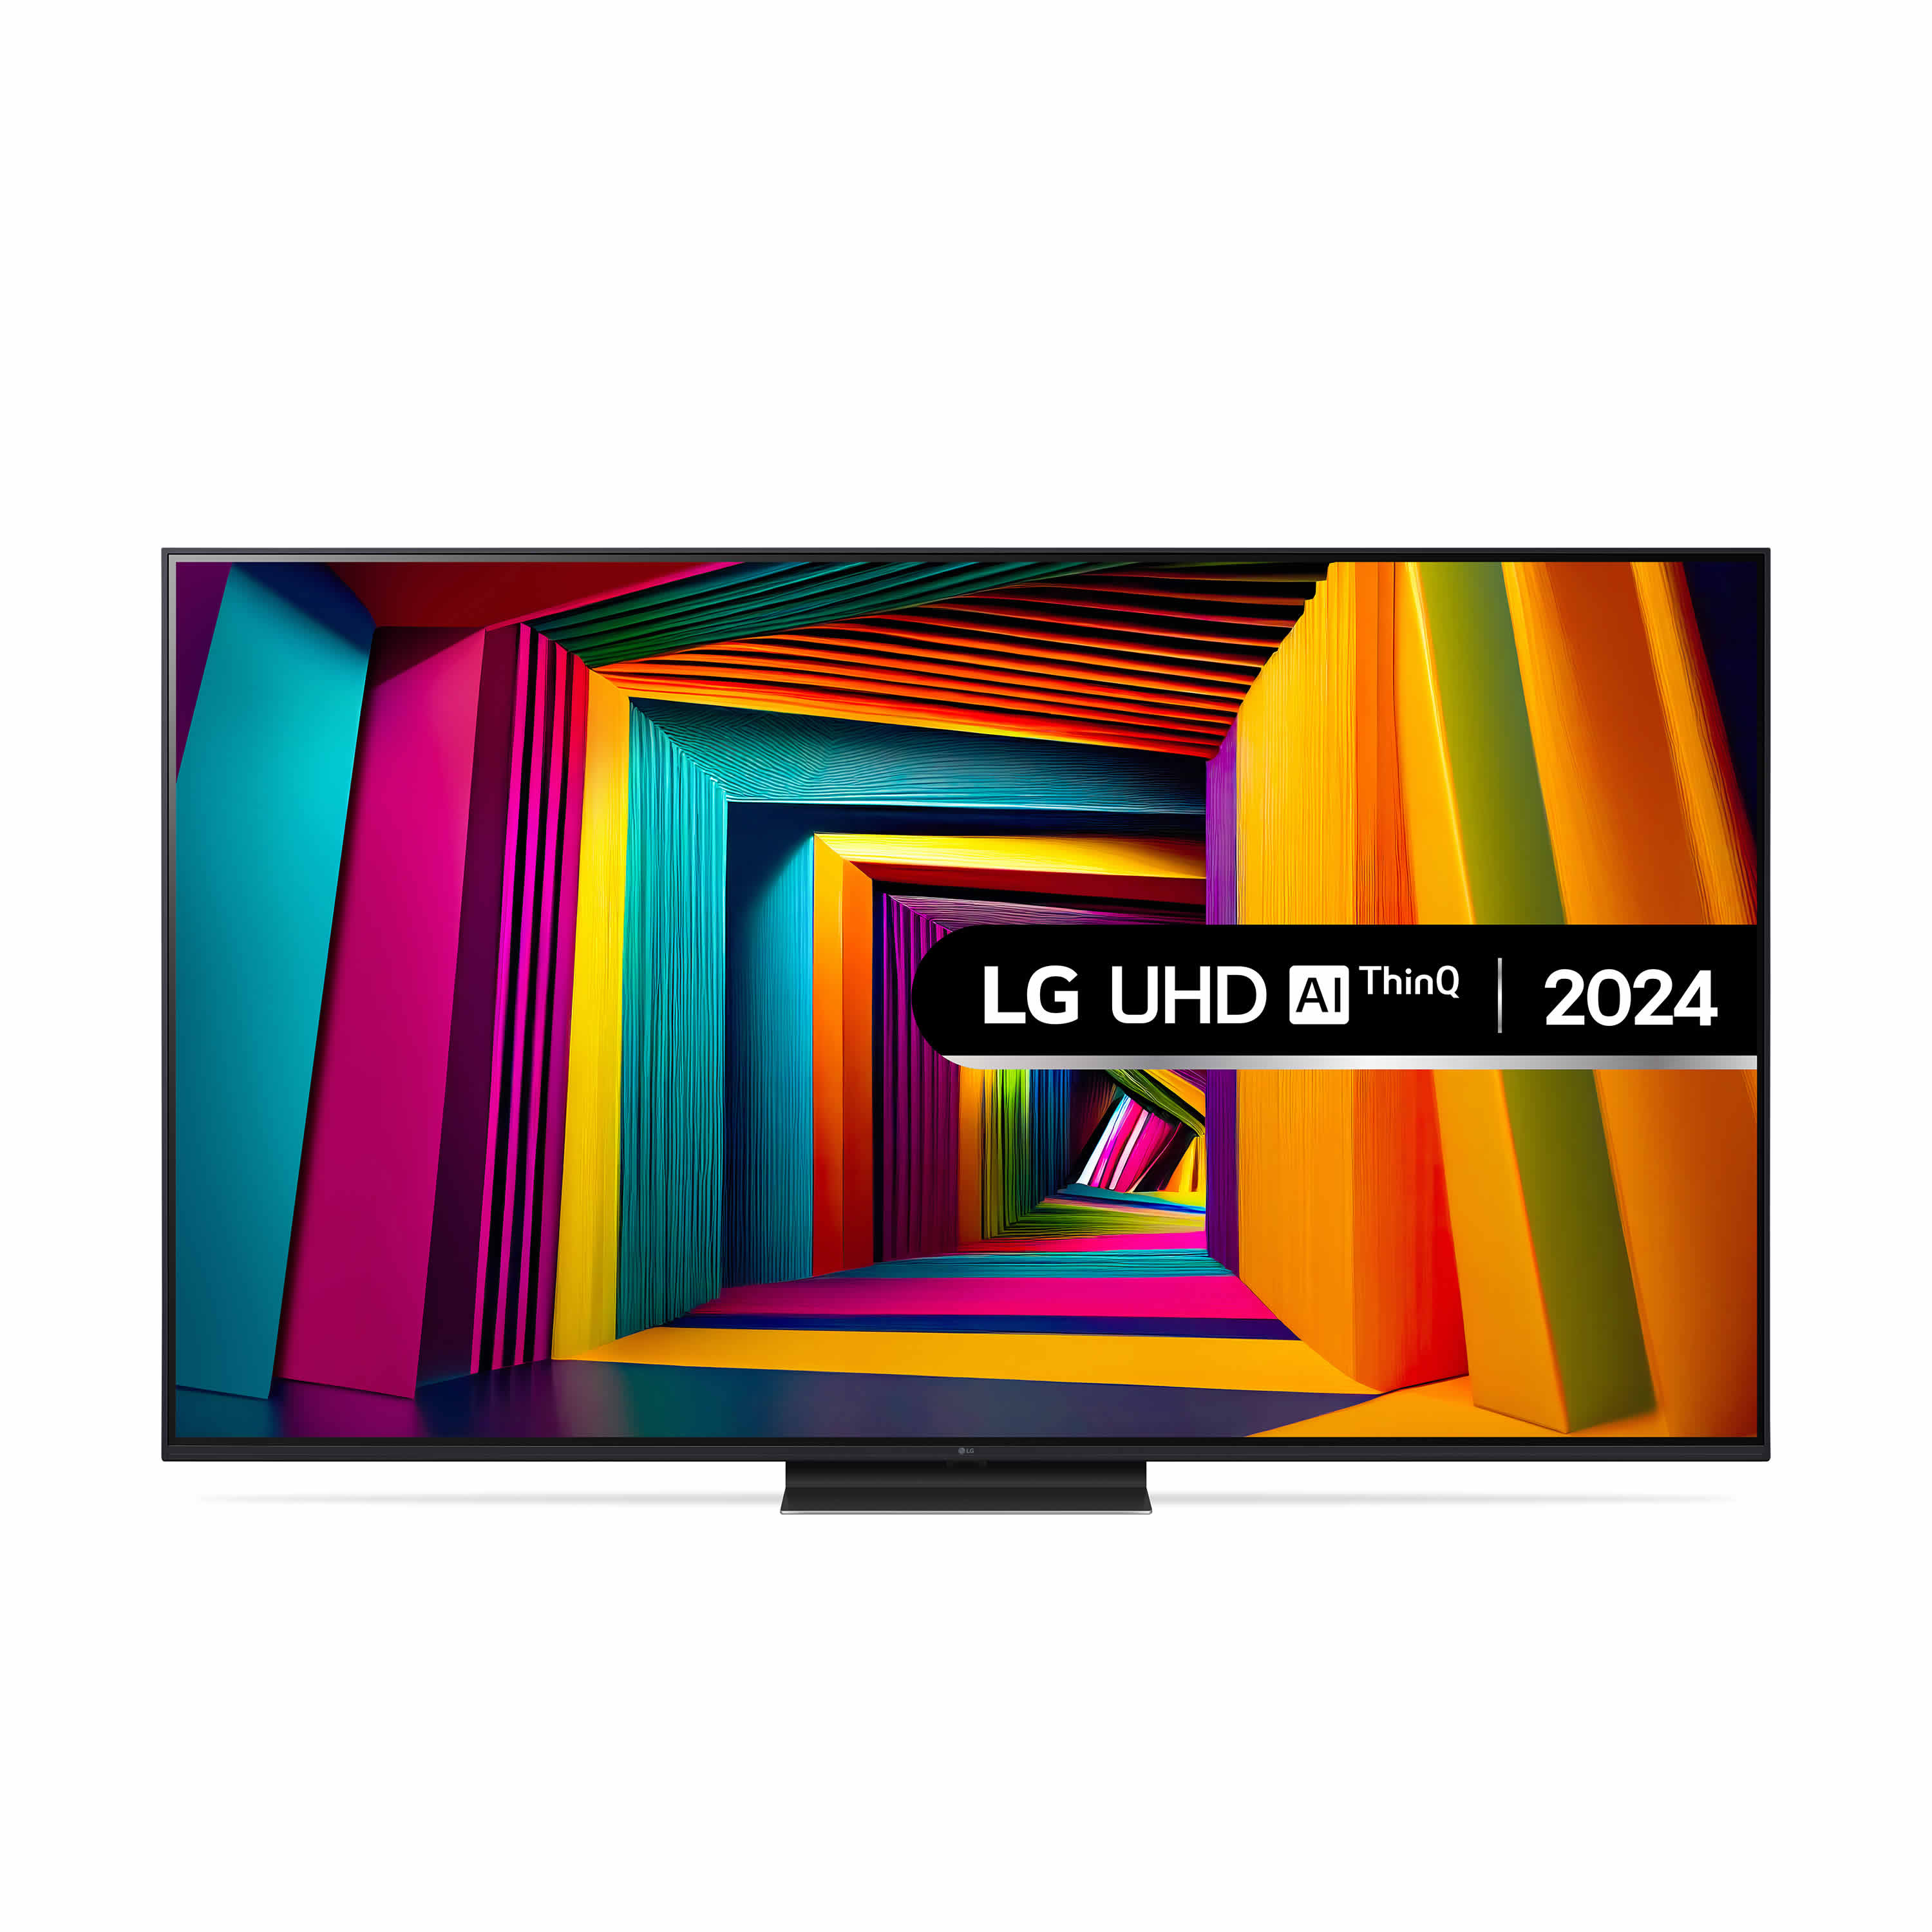 LG 75inch HDR 4K UHD LED SMART TV WiFi Built-in Alexa